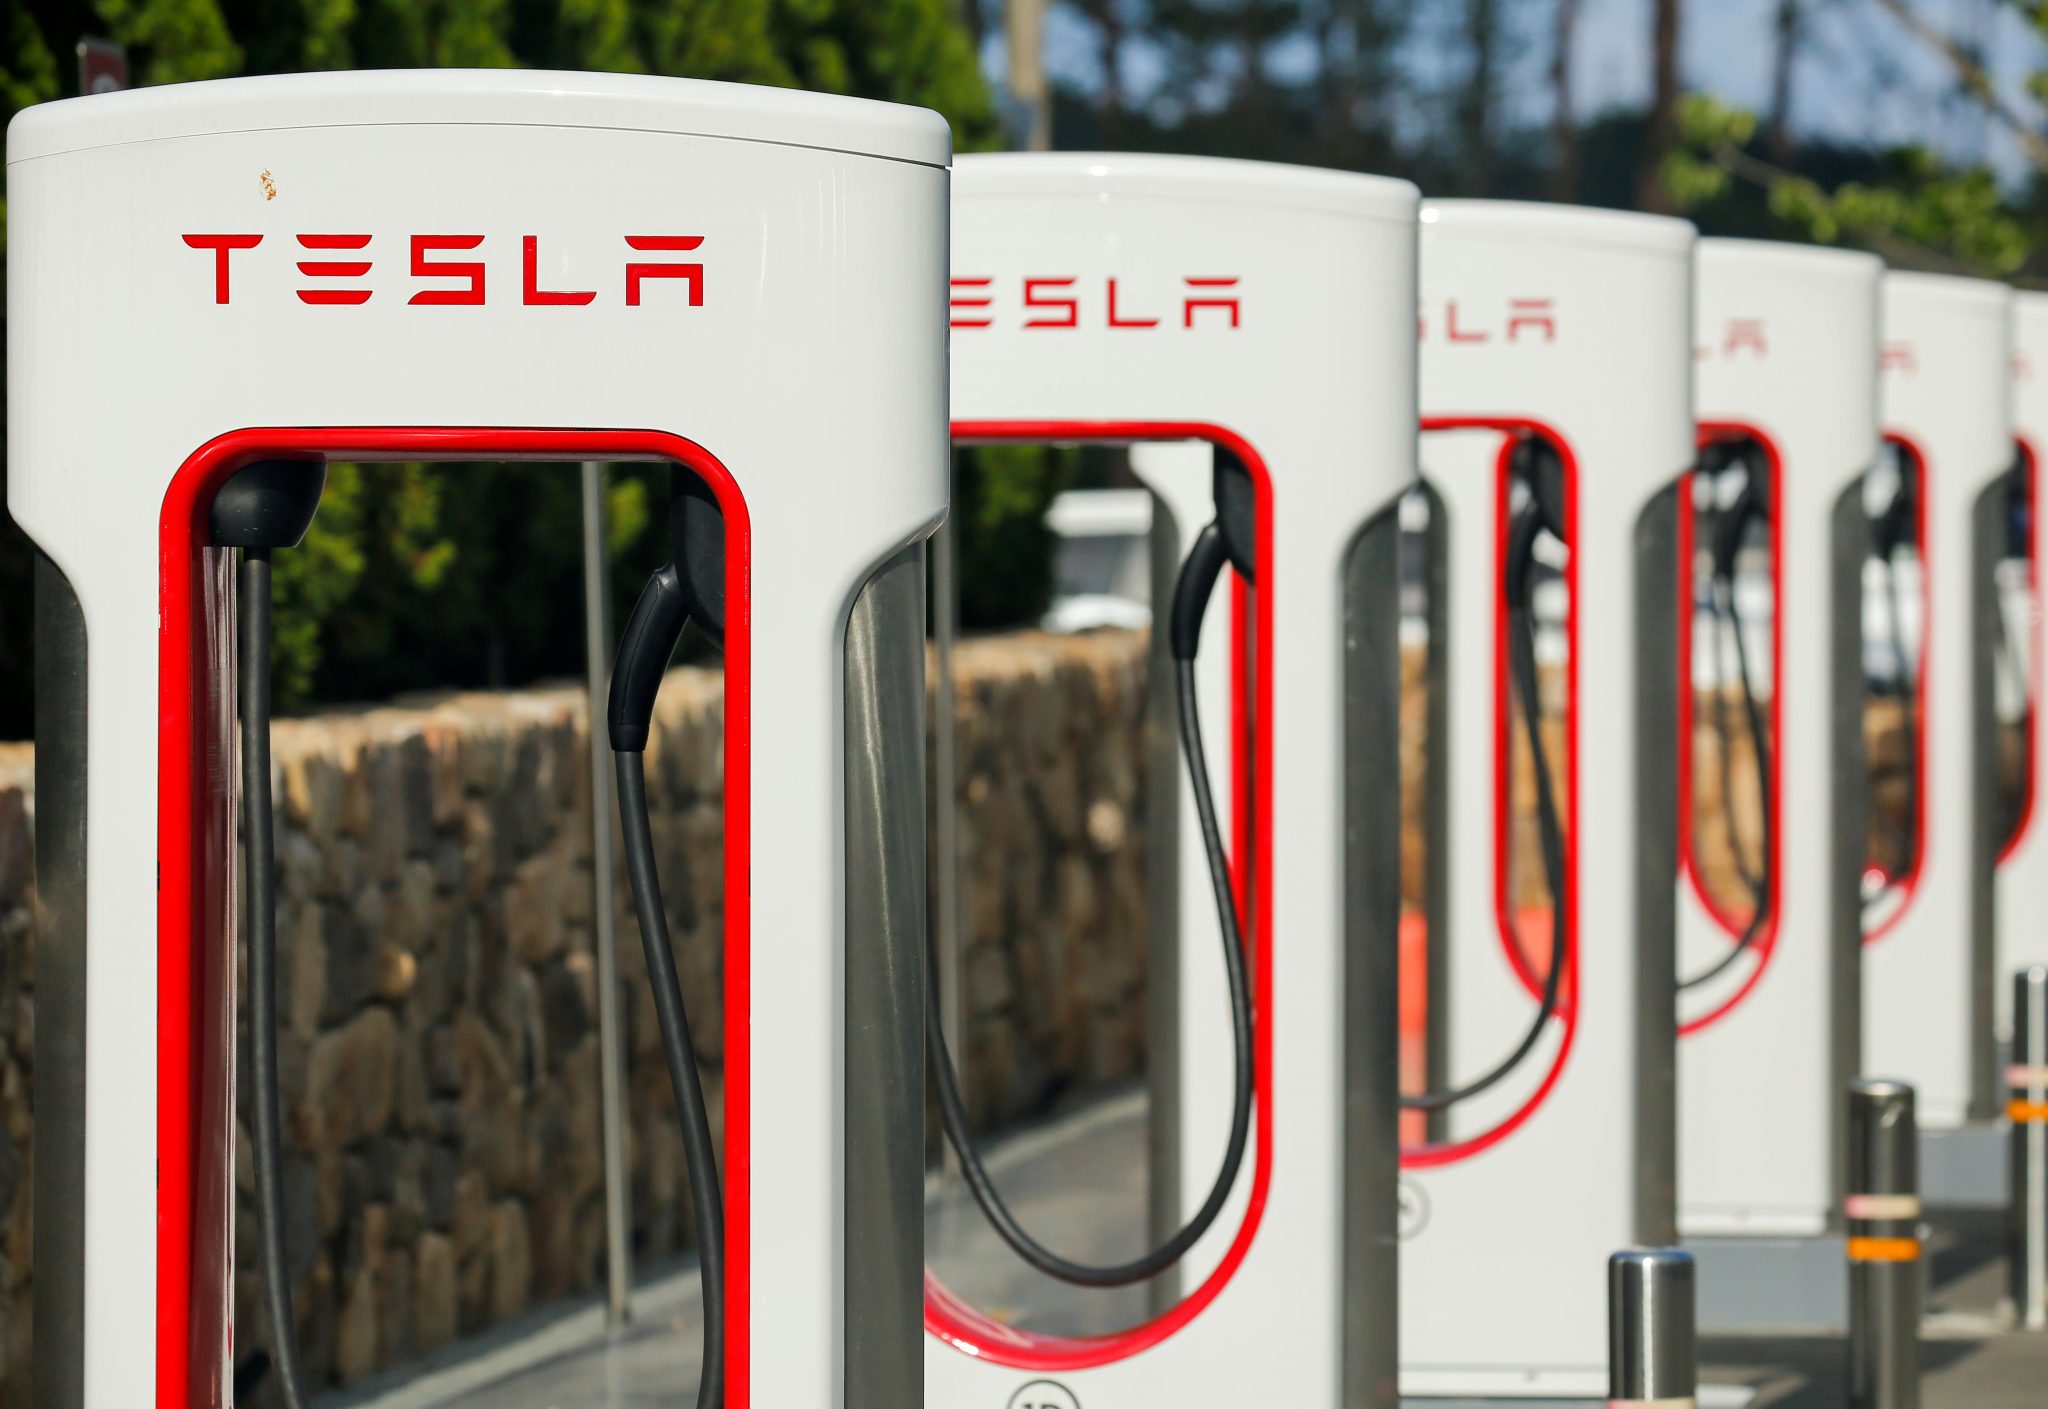 Kapan Tesla akan pindah ke Indonesia?